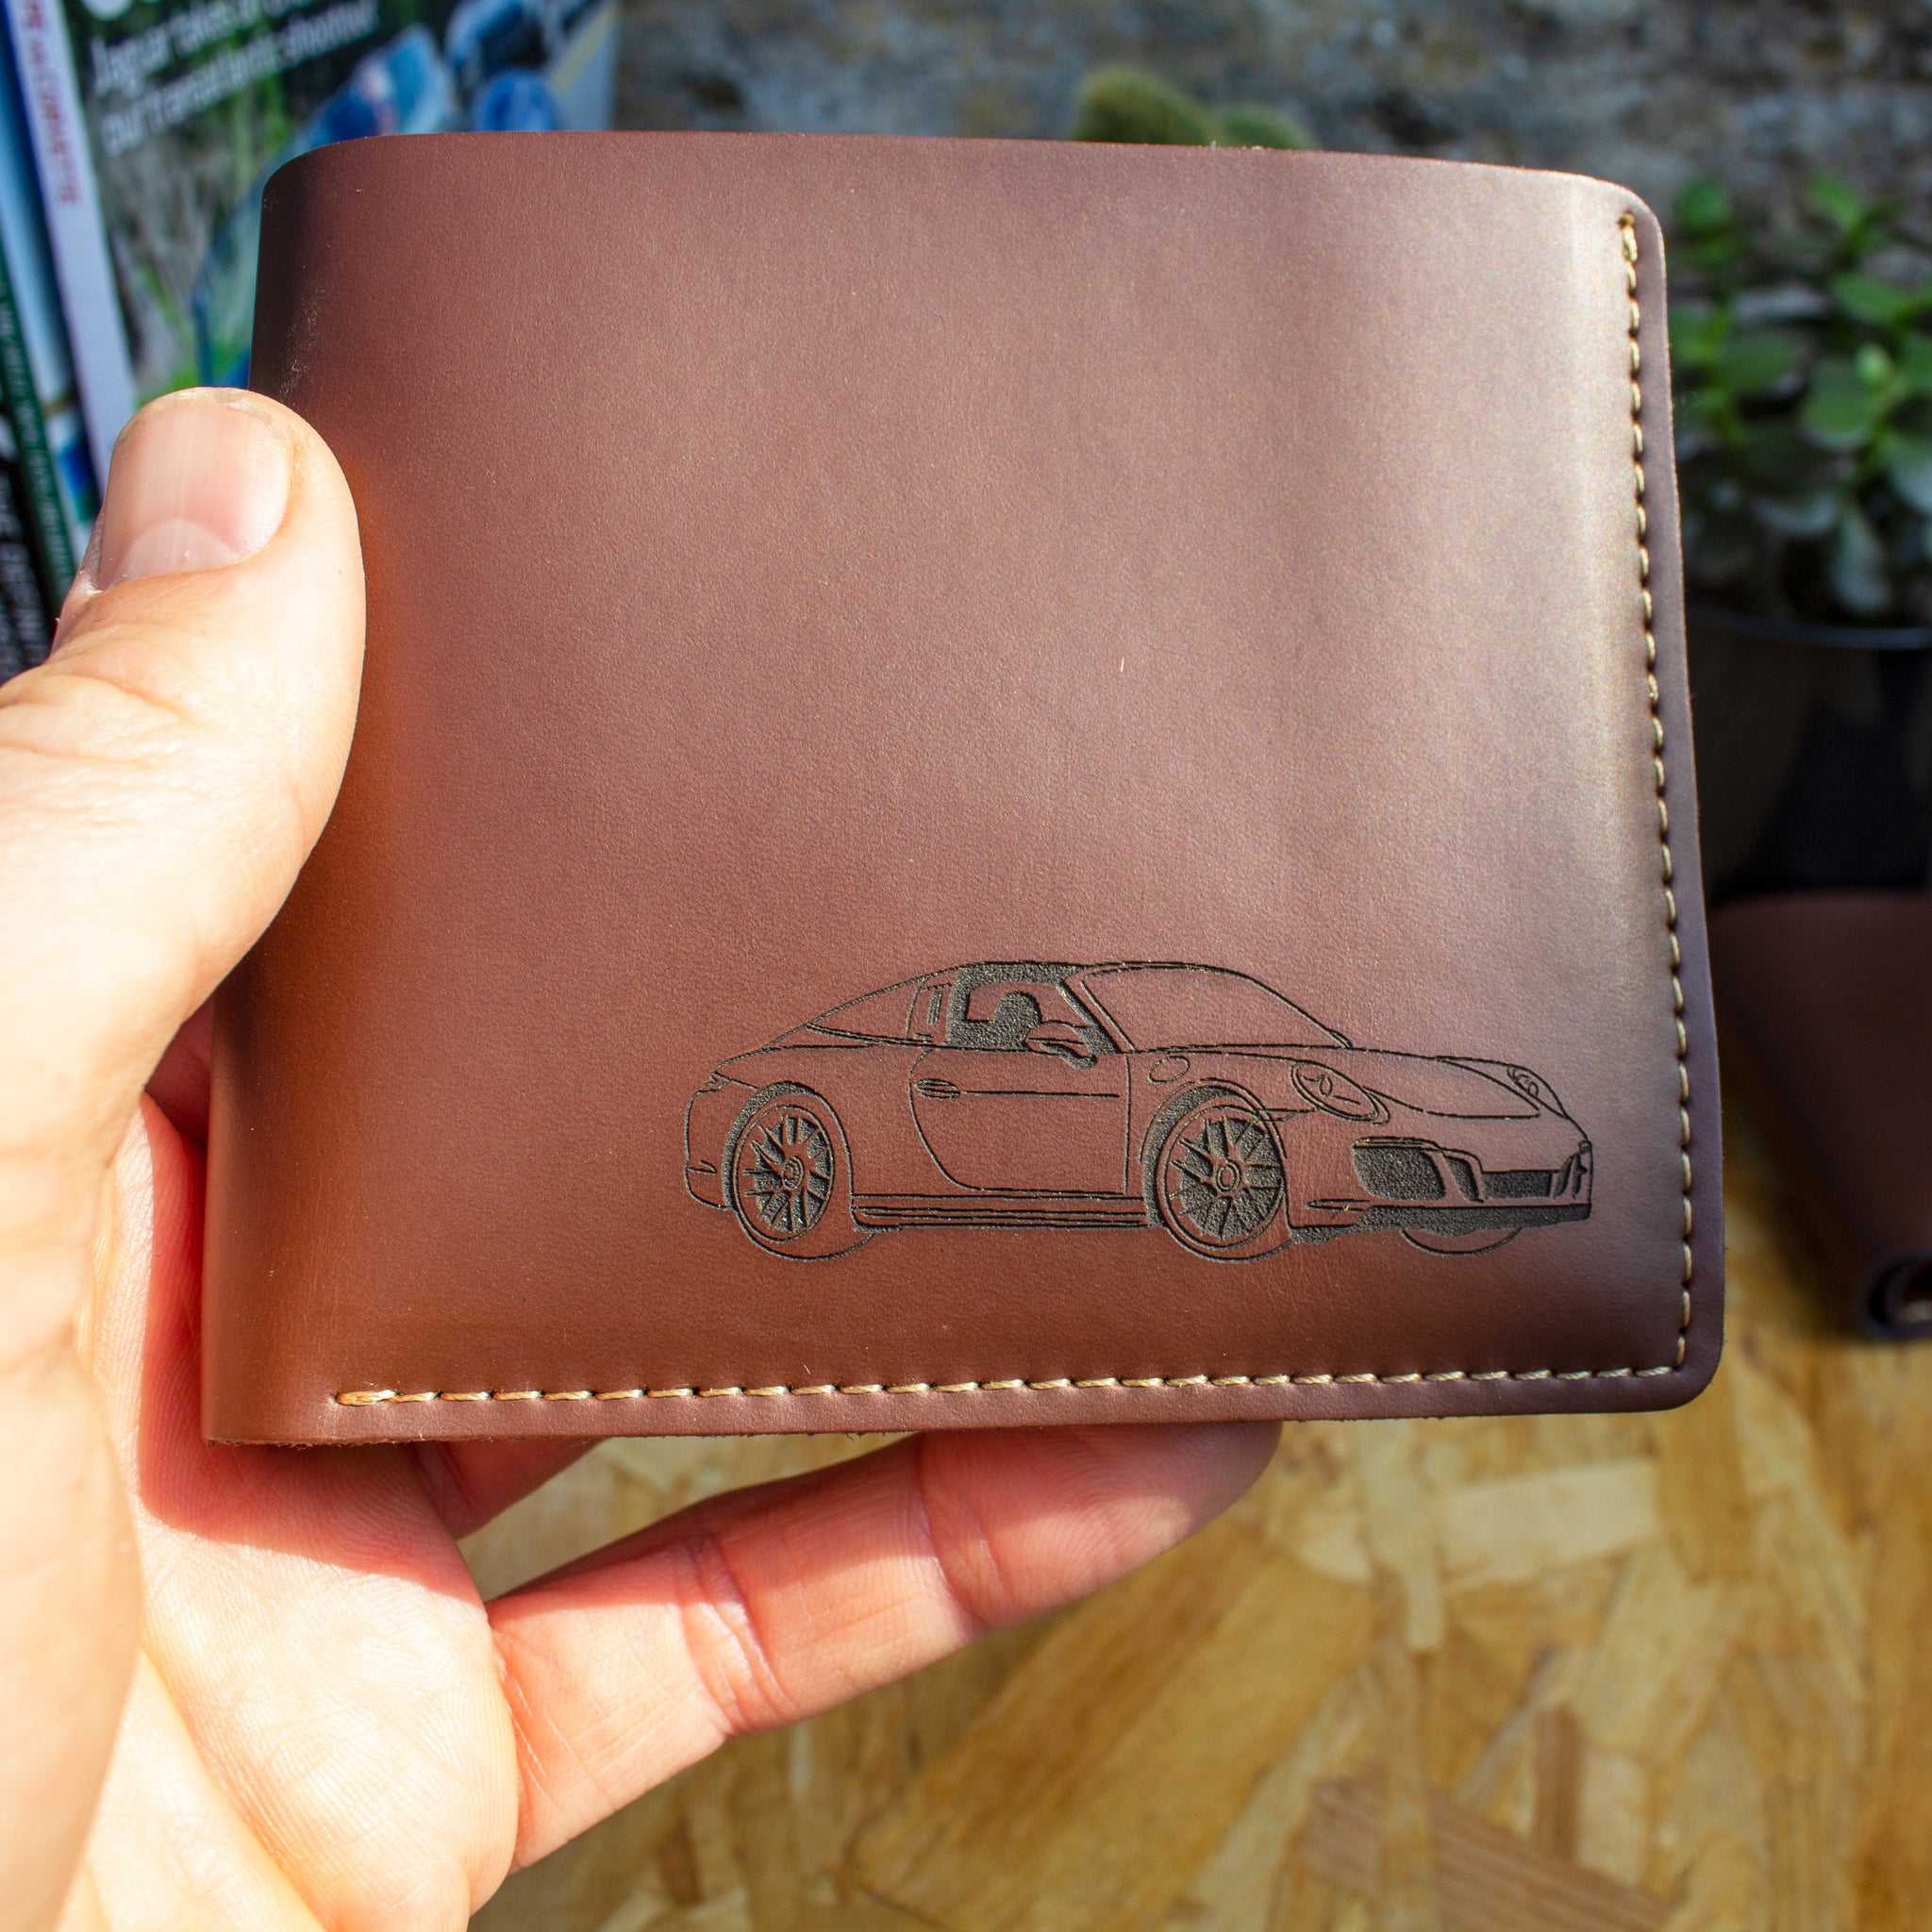 Porsche targa laser engraved leather wallet